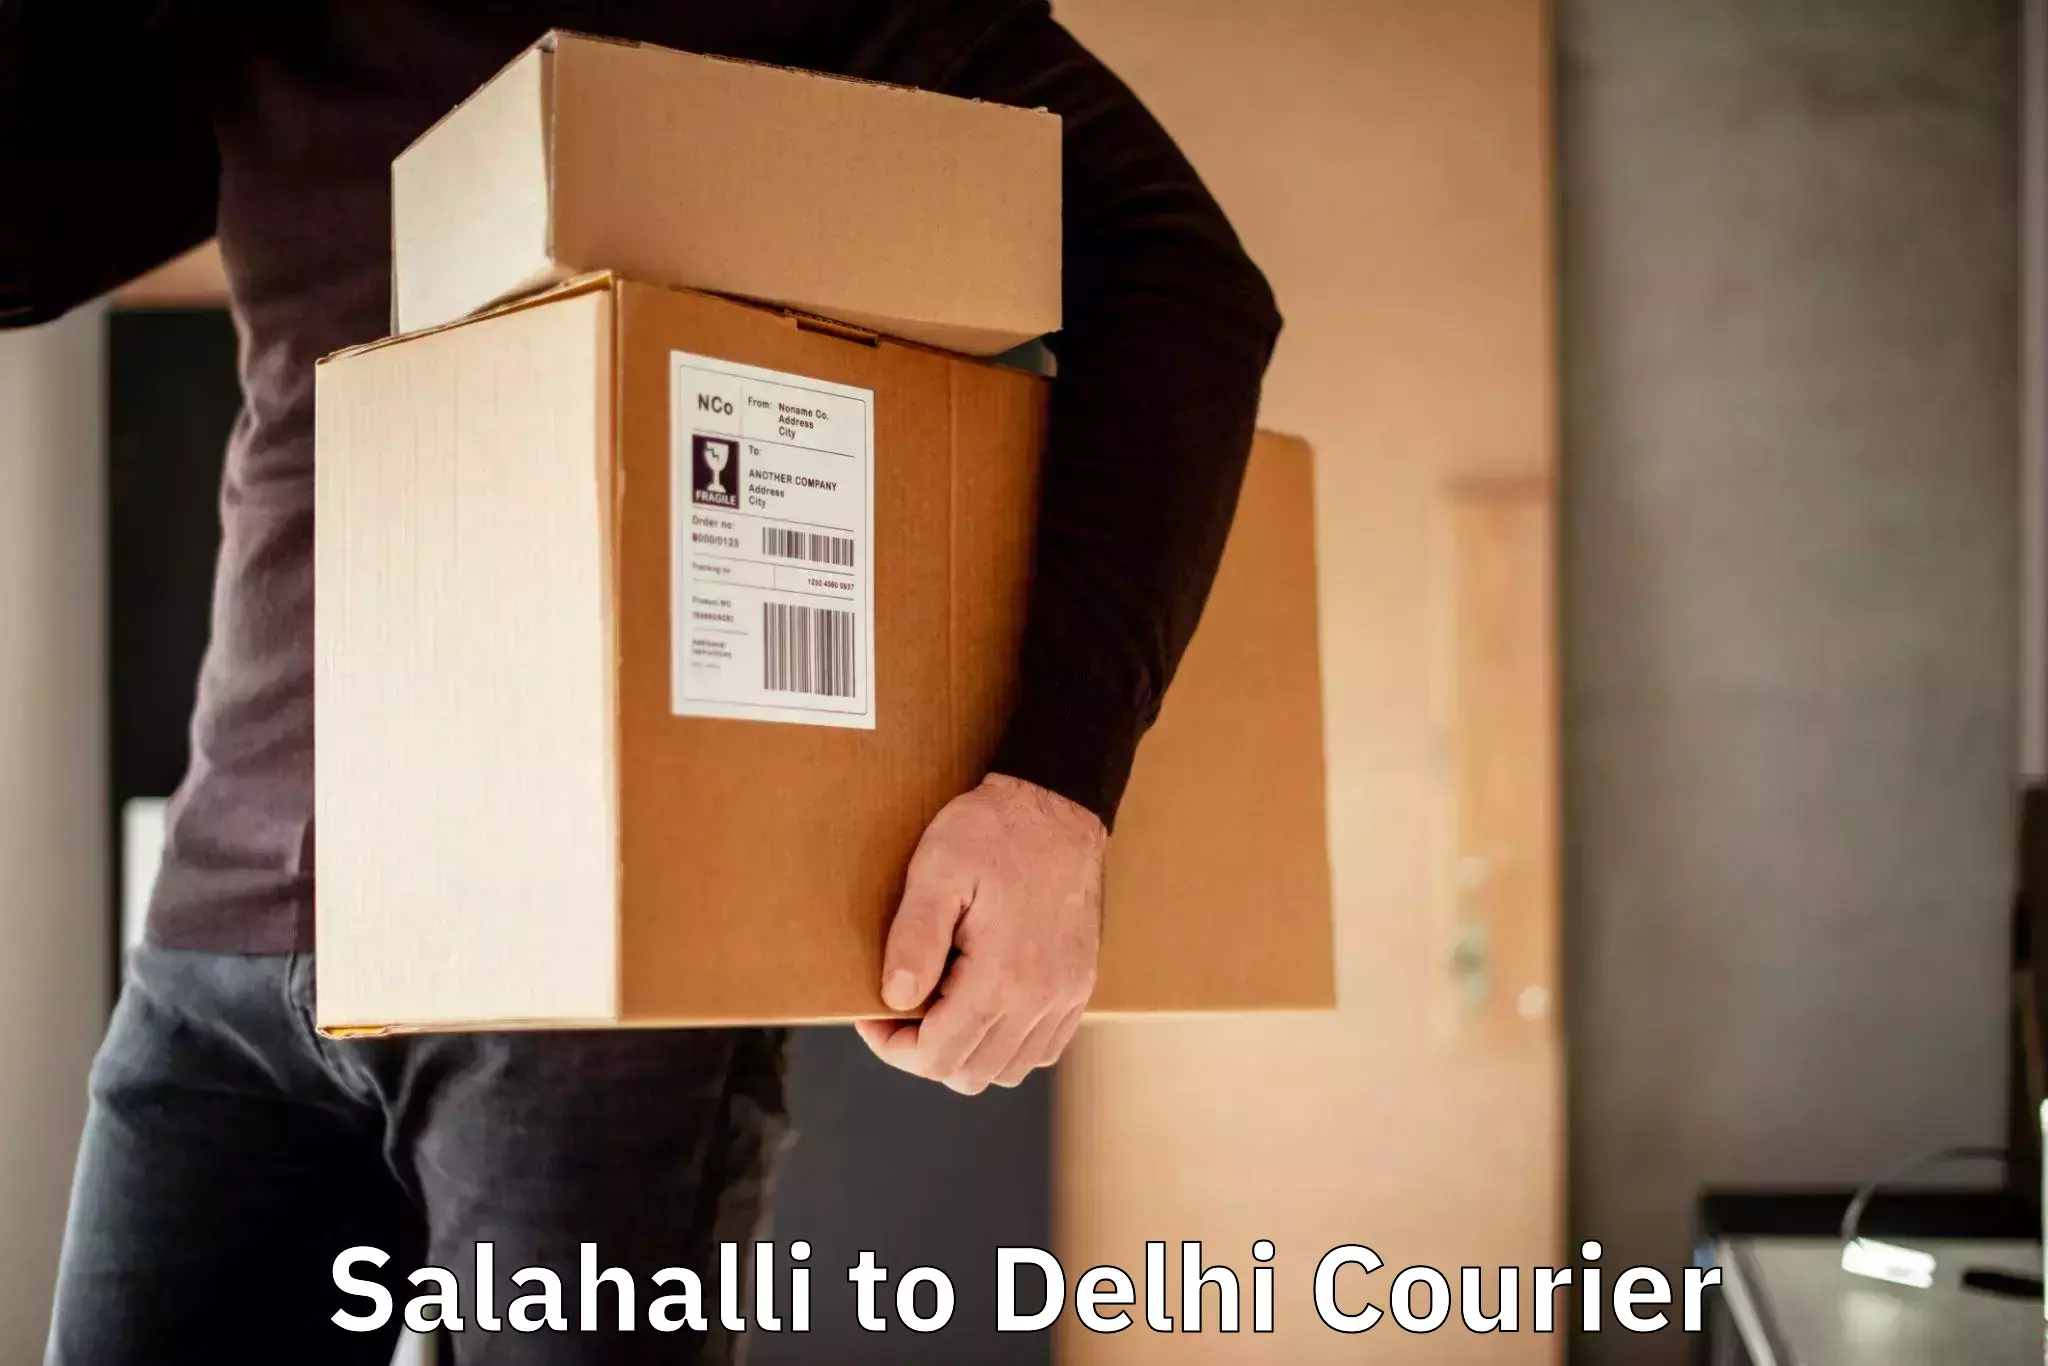 Individual parcel service Salahalli to Krishna Nagar